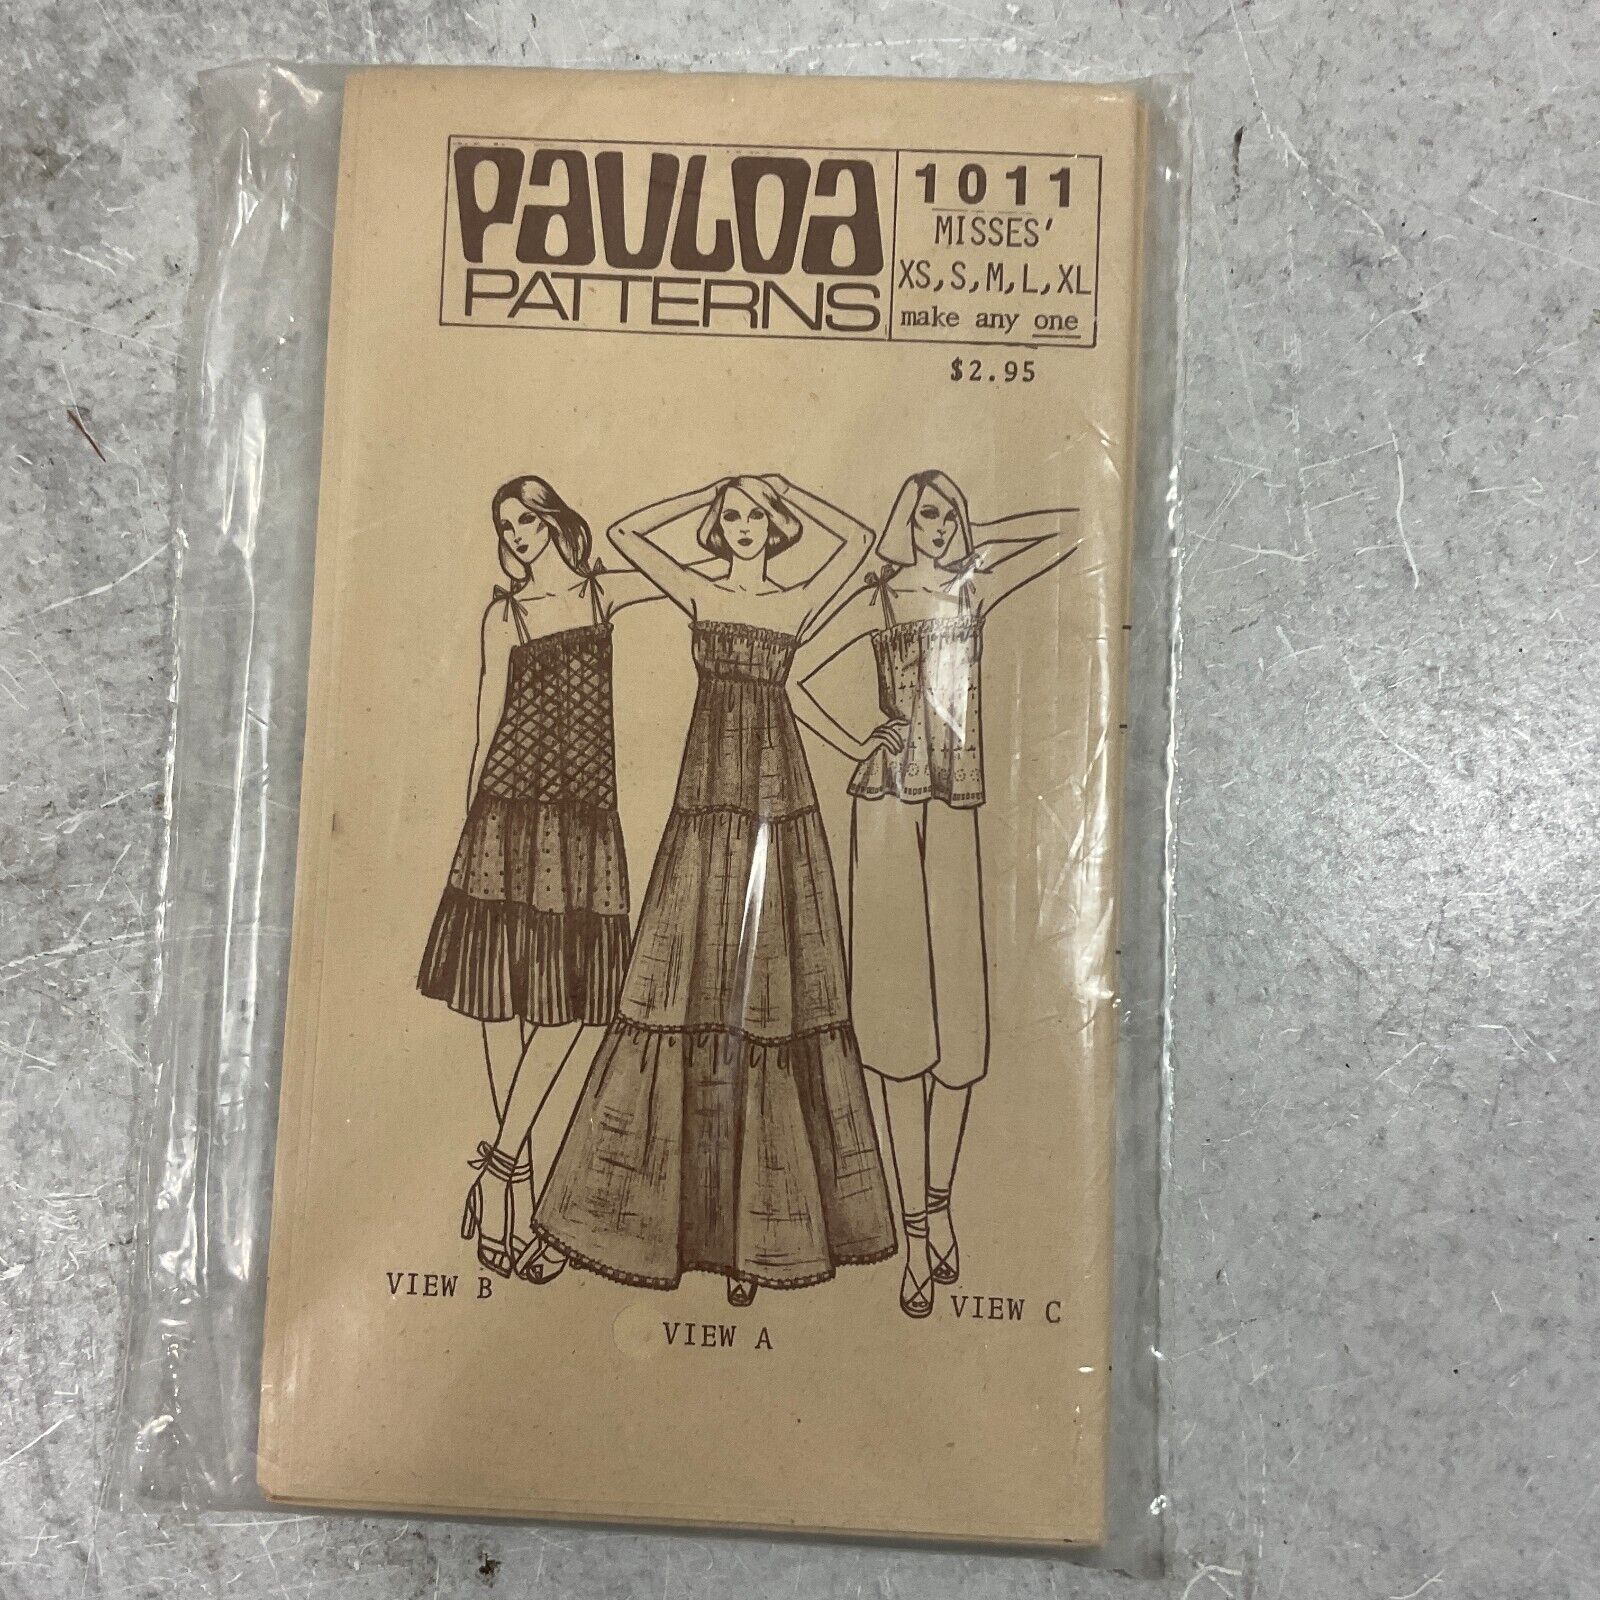 Vintage Hawaiian Pauloa Patterns 1011 Dress Pattern Size XS, S, M, L, XL Uncut